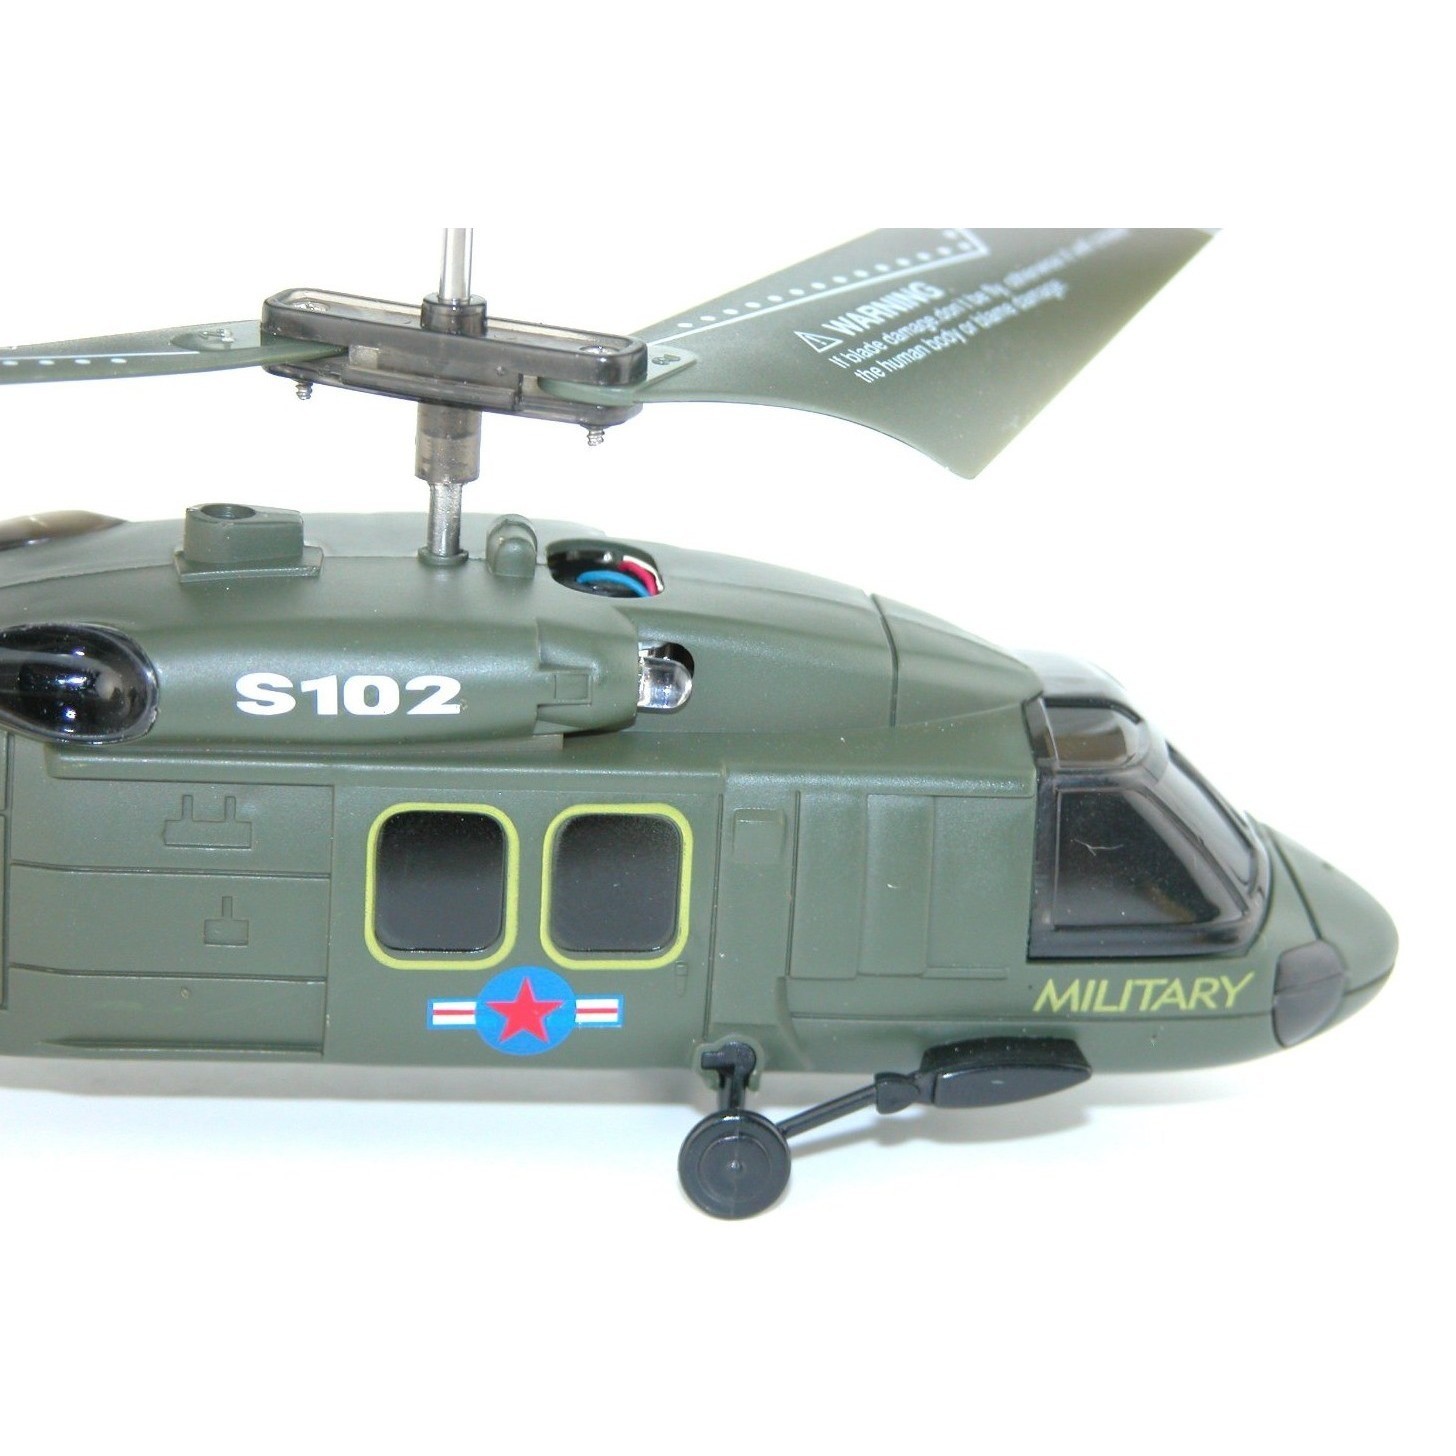 Вертолет купить игрушка. Вертолёт Syma s102g. Вертолет Syma Black Hawk uh-60 (s102g) 20 см. Вертолет Syma s109g зеленый. Радиоуправляемый вертолет Black Hawk.